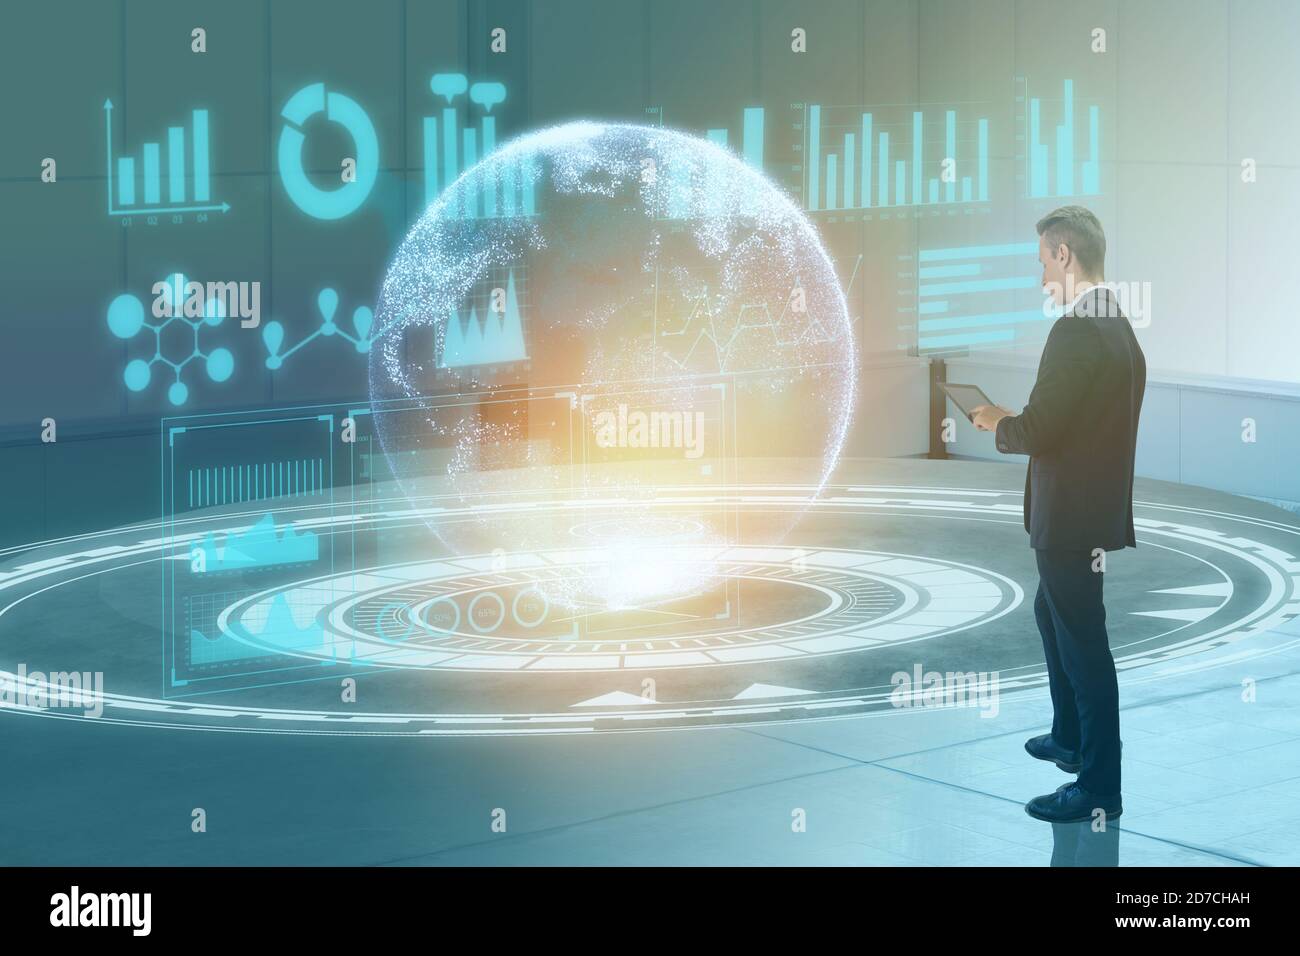 concept de technologie de transformation numérique homme d'affaires utilisant le virtuel mixte augmenté la réalité a combiné l'intelligence artificielle pour faire des affaires dans l'industrie Banque D'Images